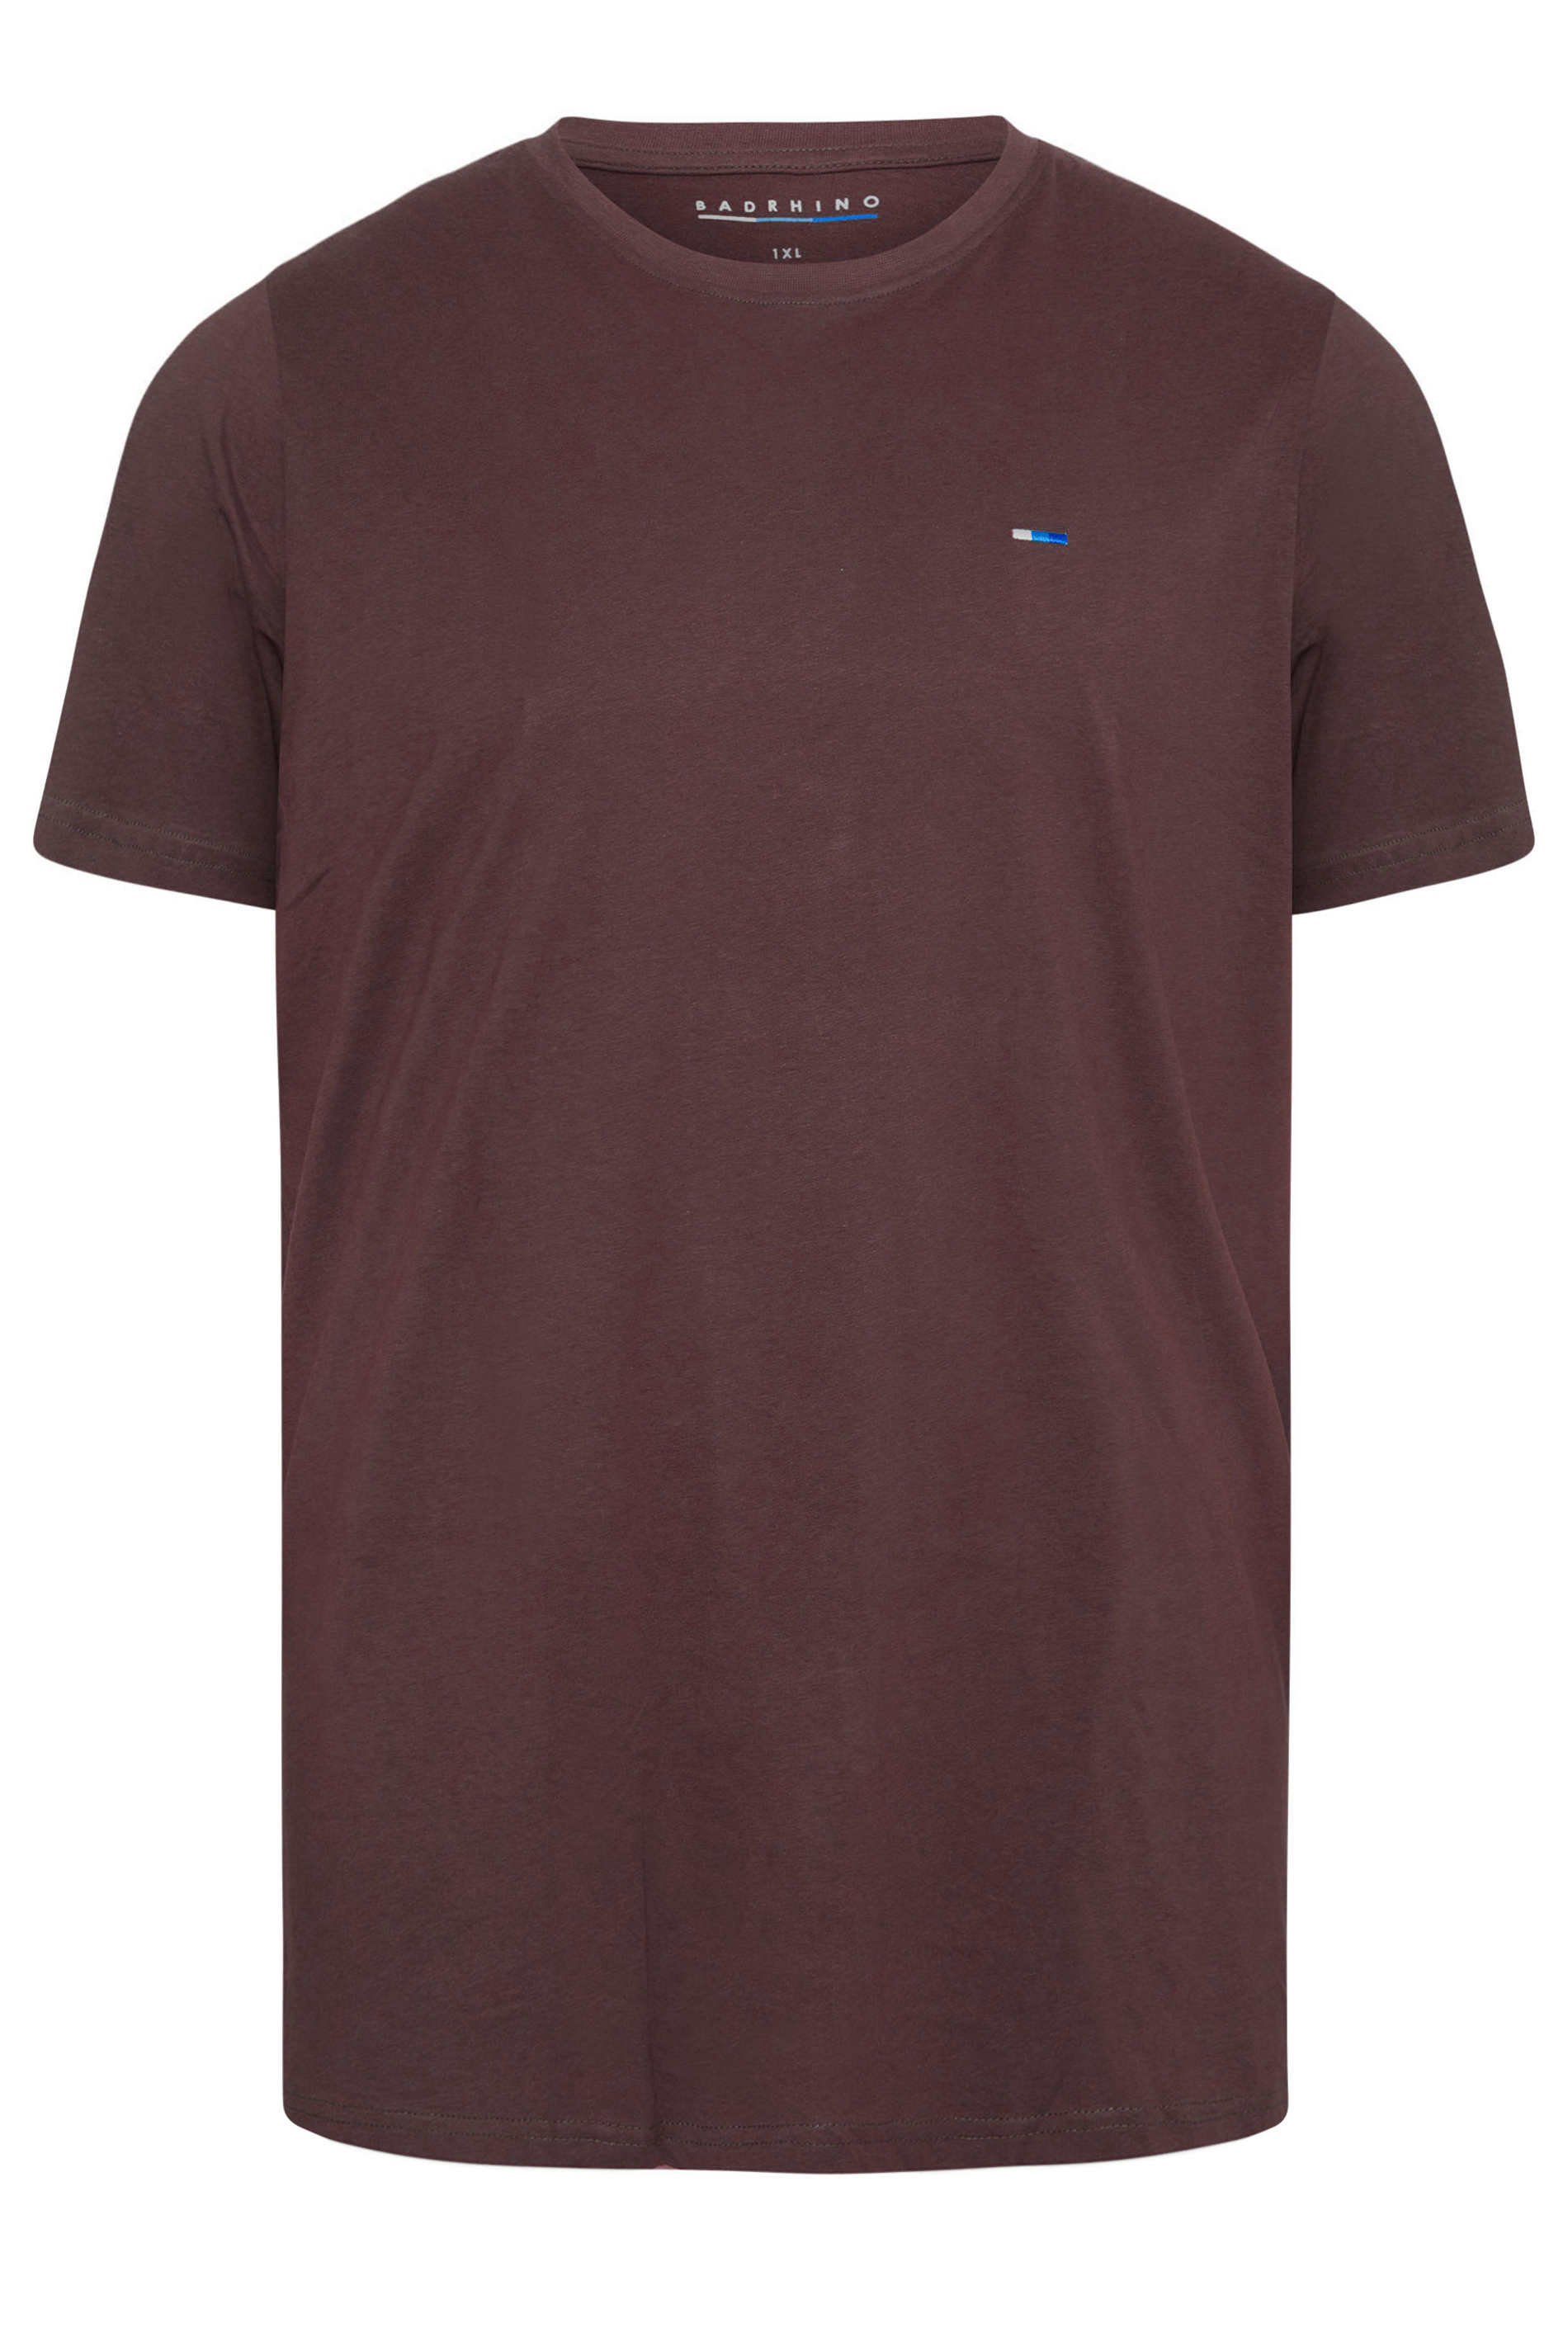 BadRhino Burgundy Red Core T-Shirt | BadRhino 2